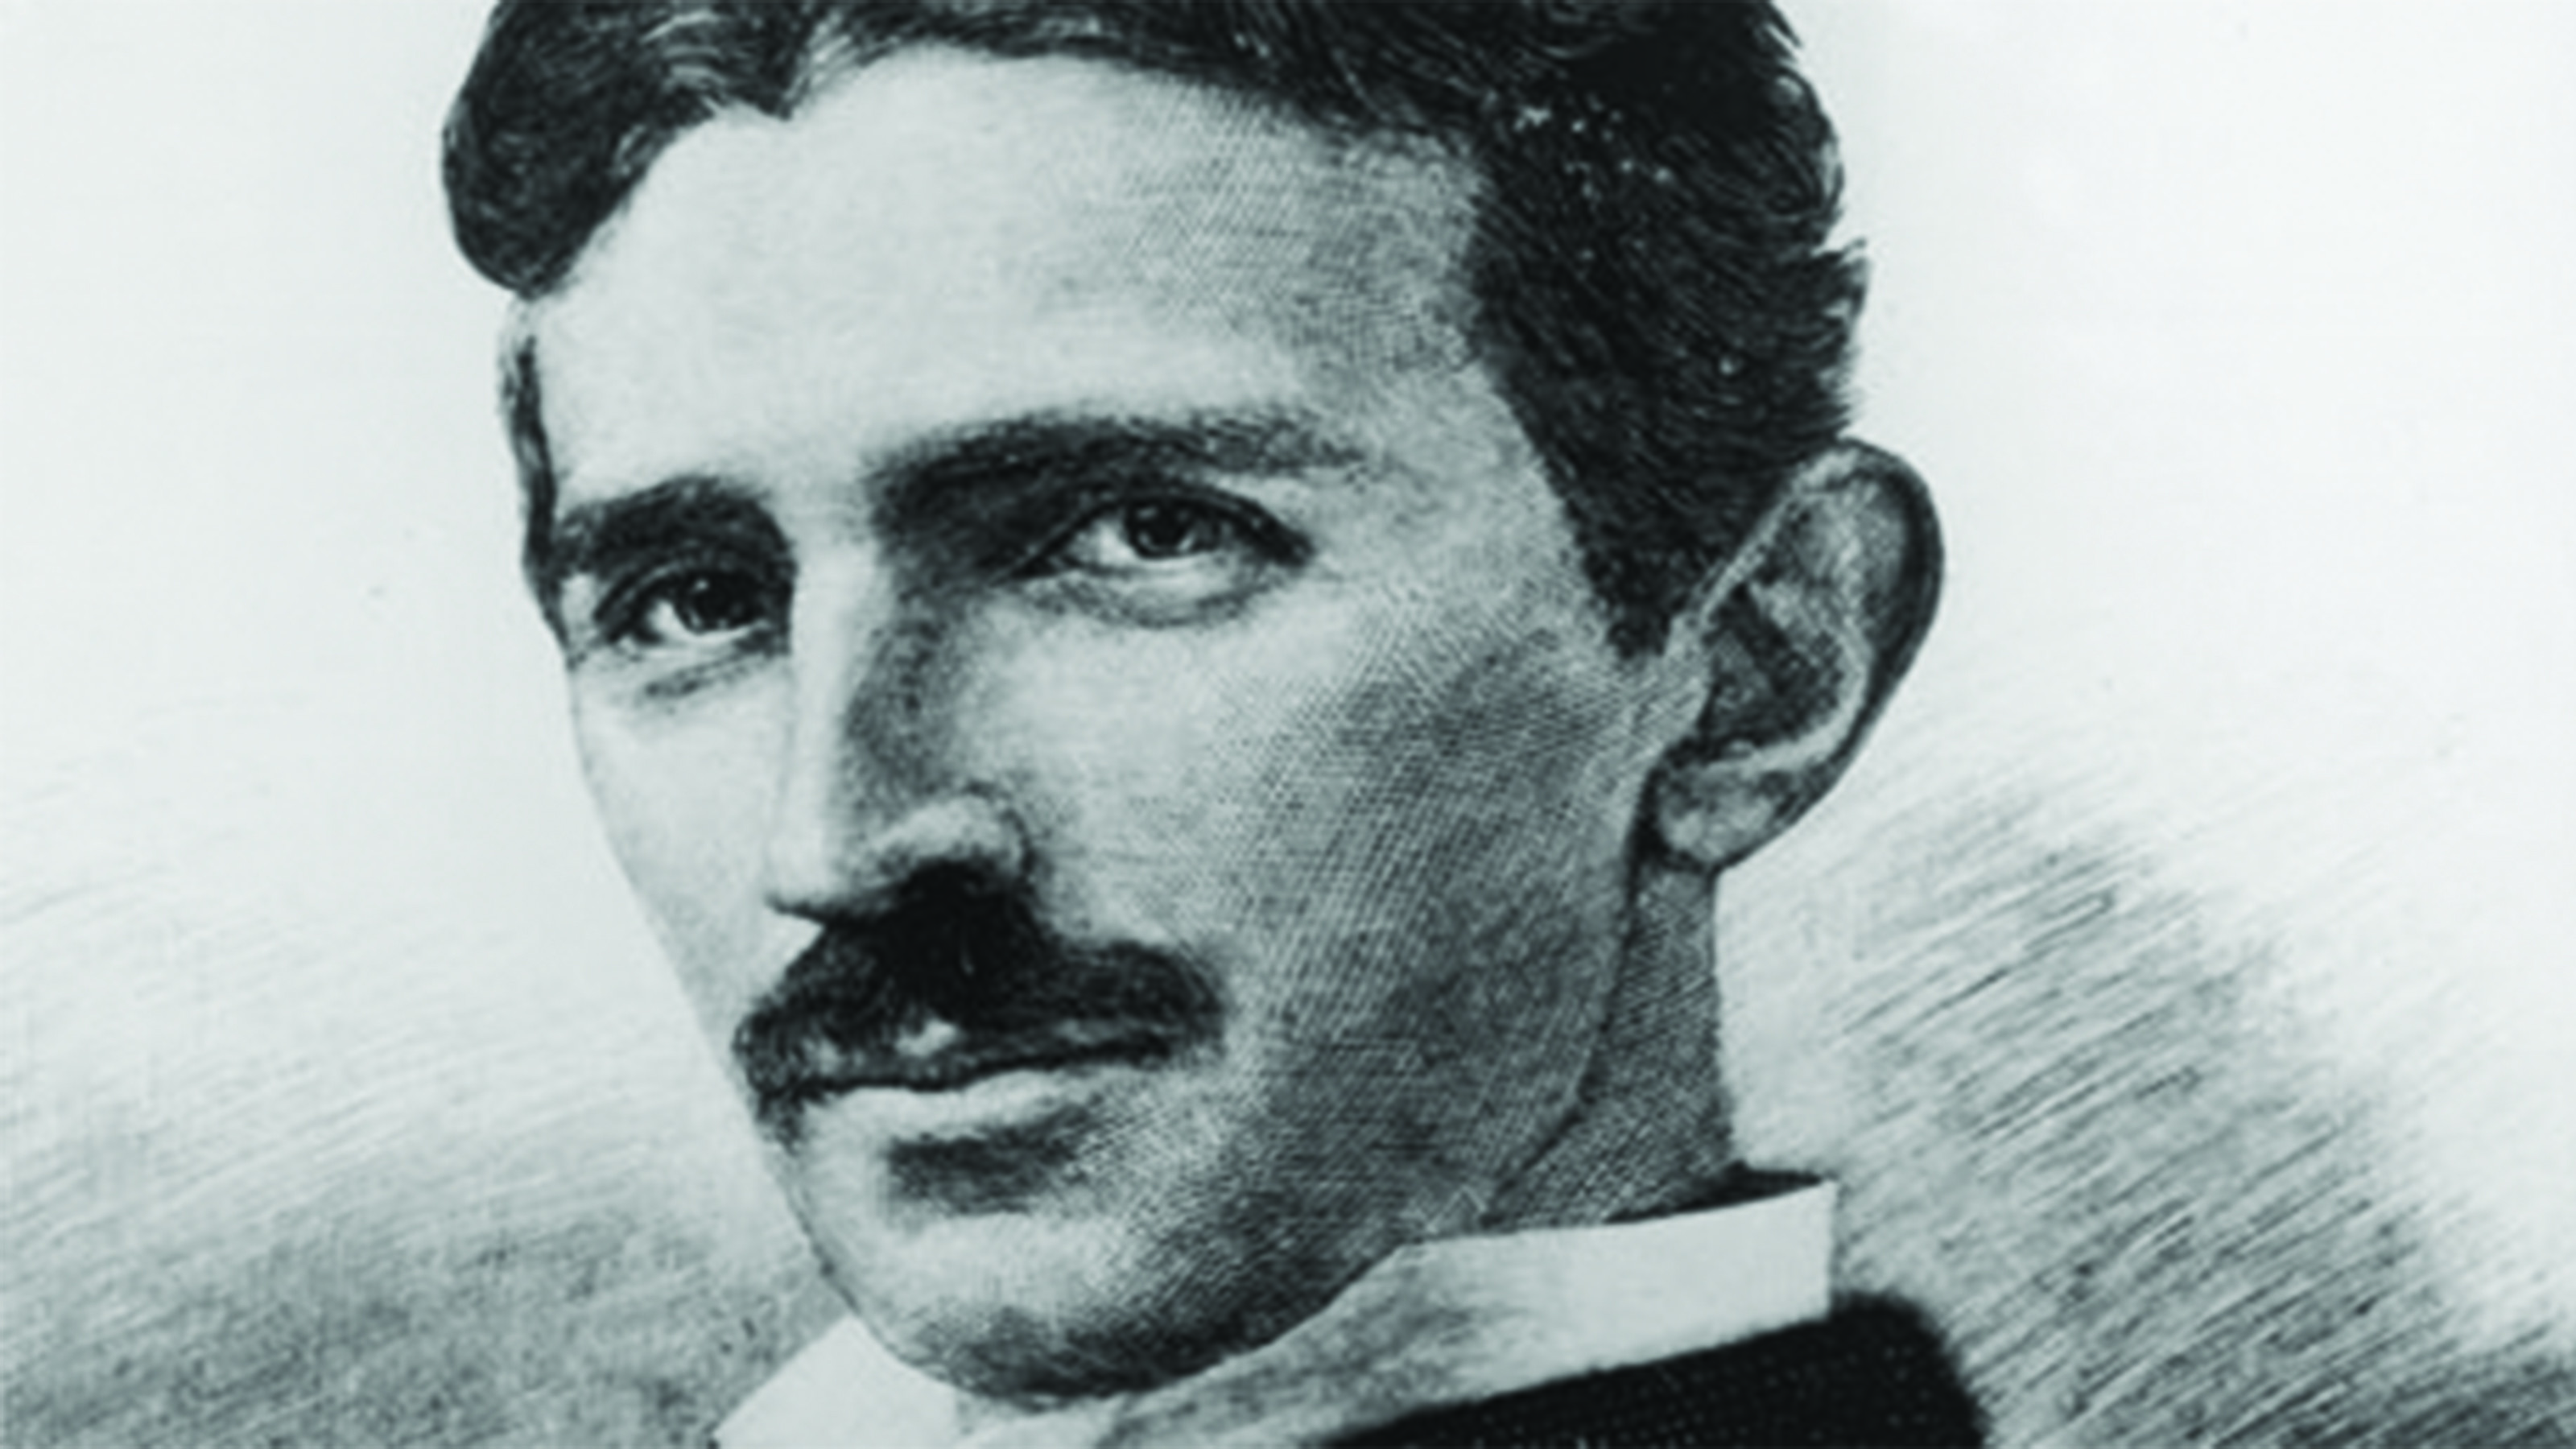 3200x1800 Nikola Tesla Portrait - http://imashon.com/w/nikola-